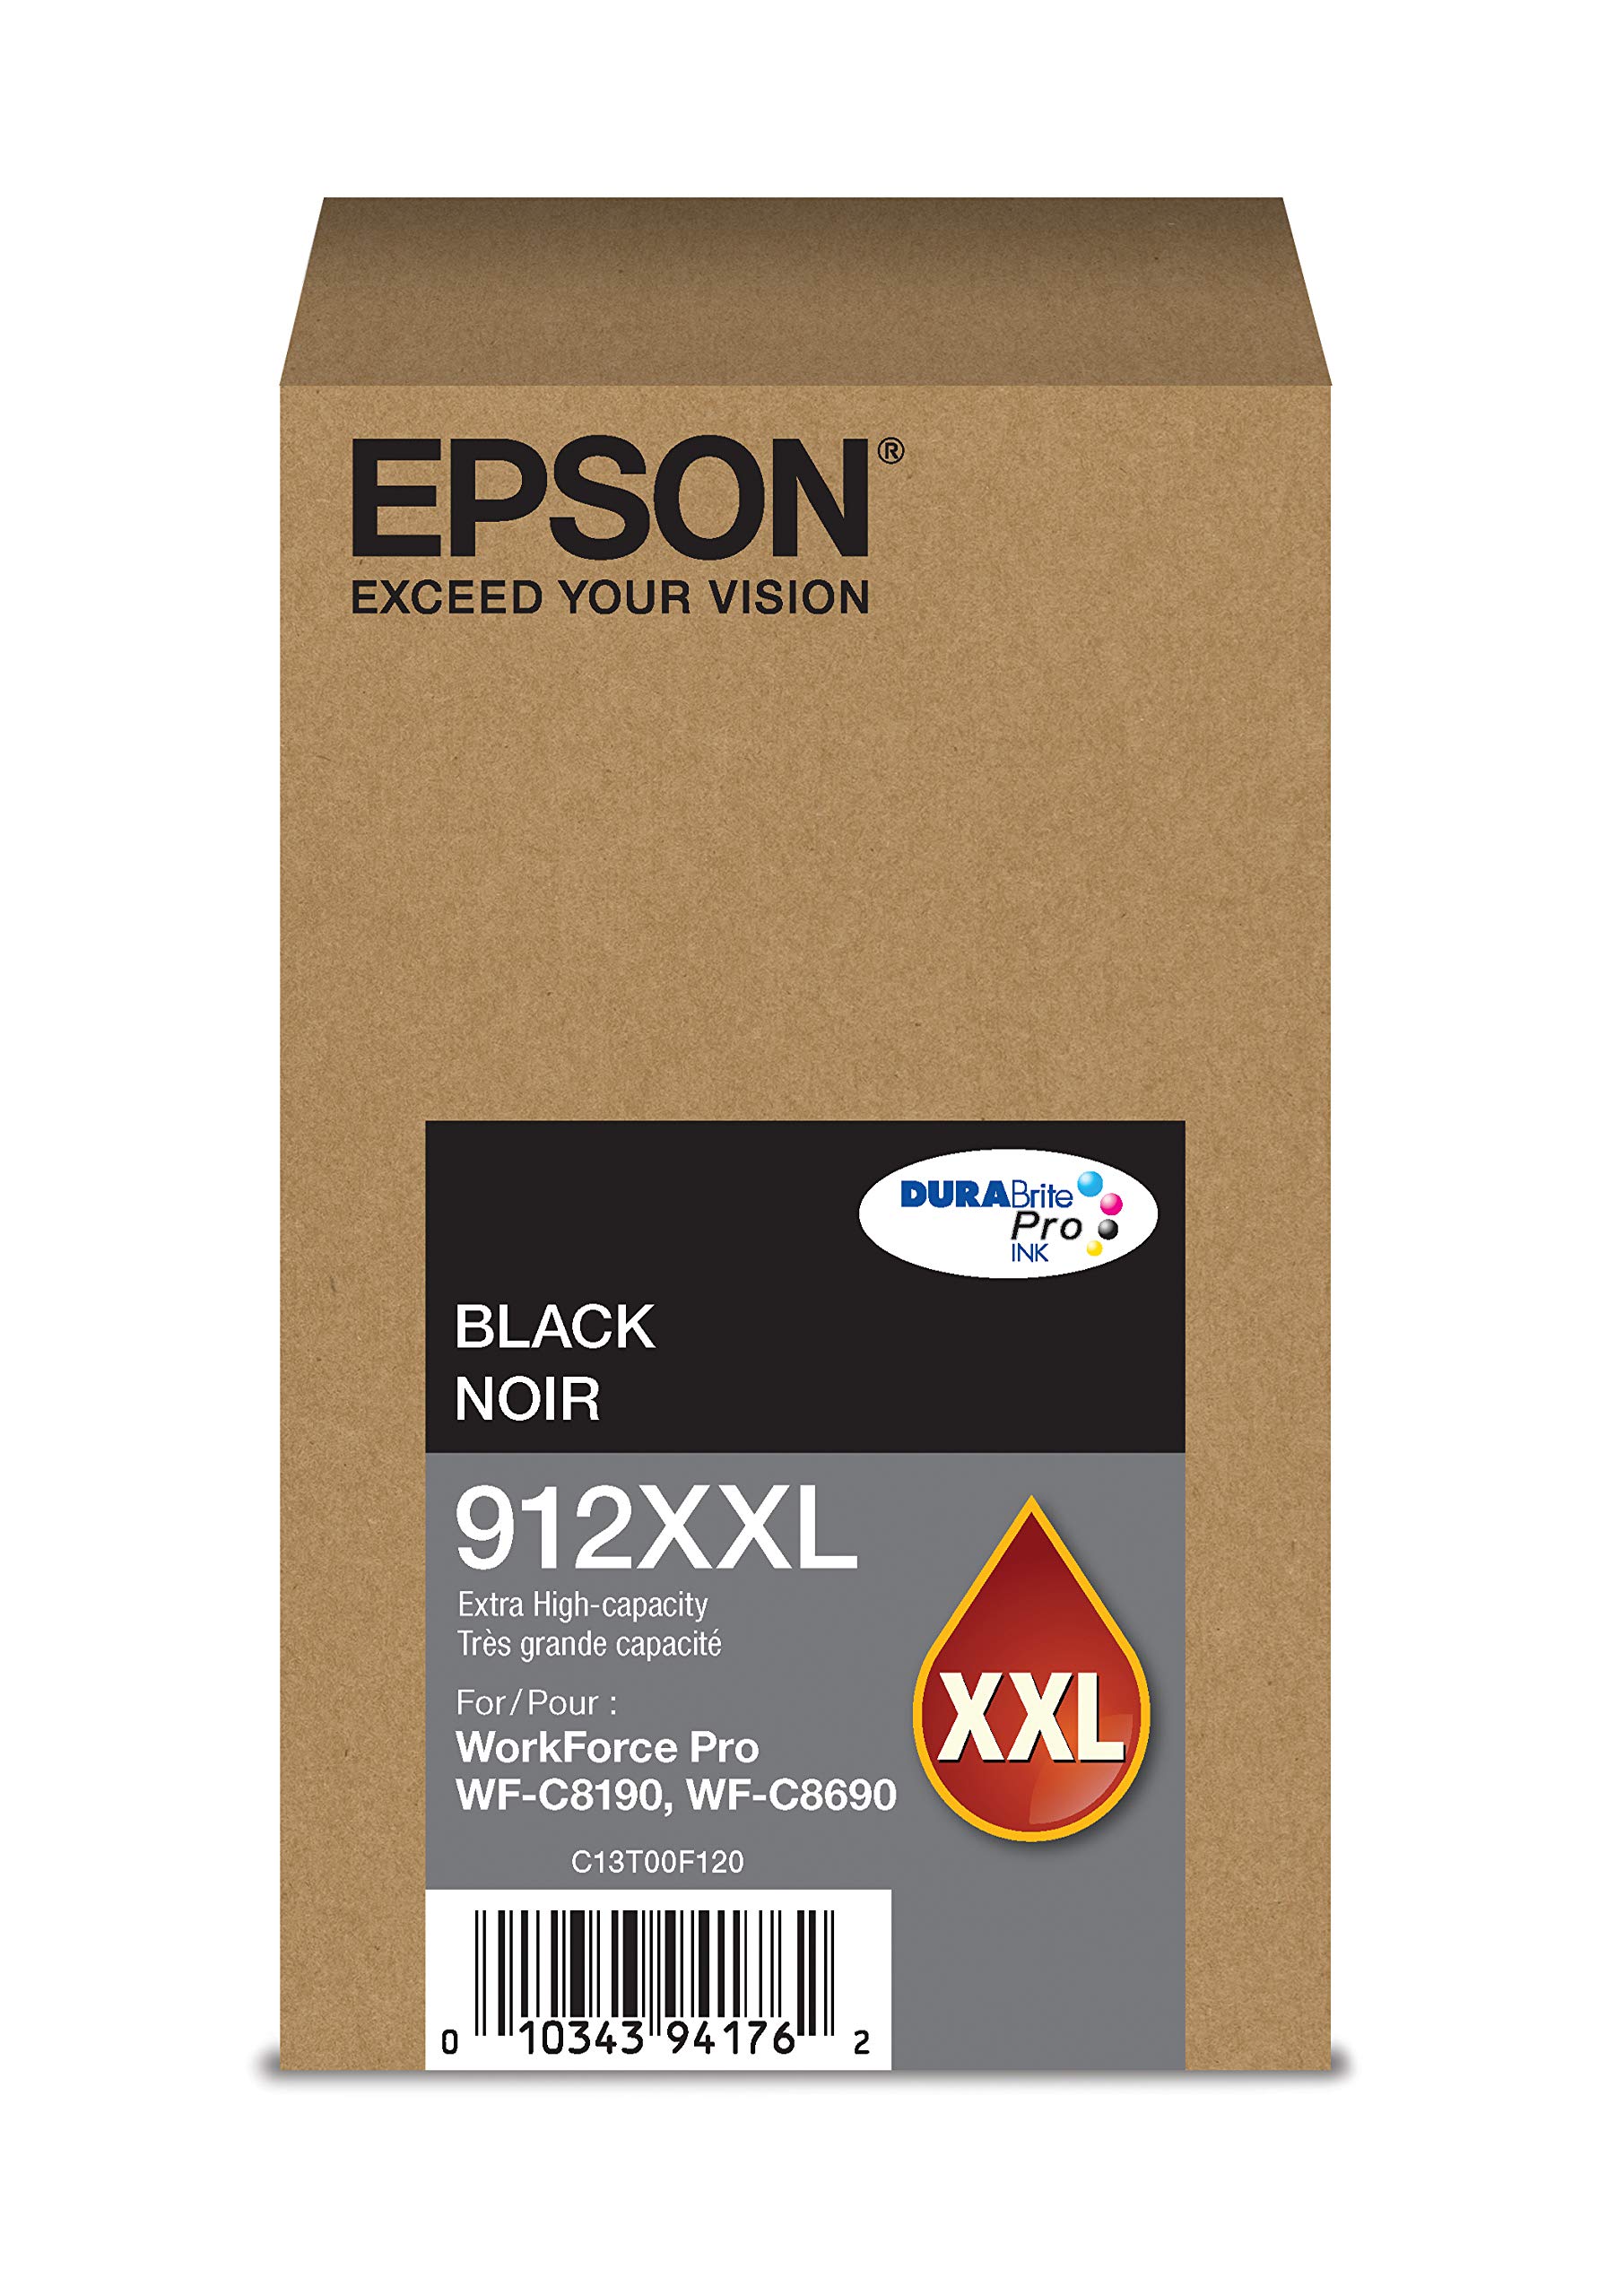 Epson DURABrite Pro T912XXL120 -墨水 -墨盒 - 超大容量黑色